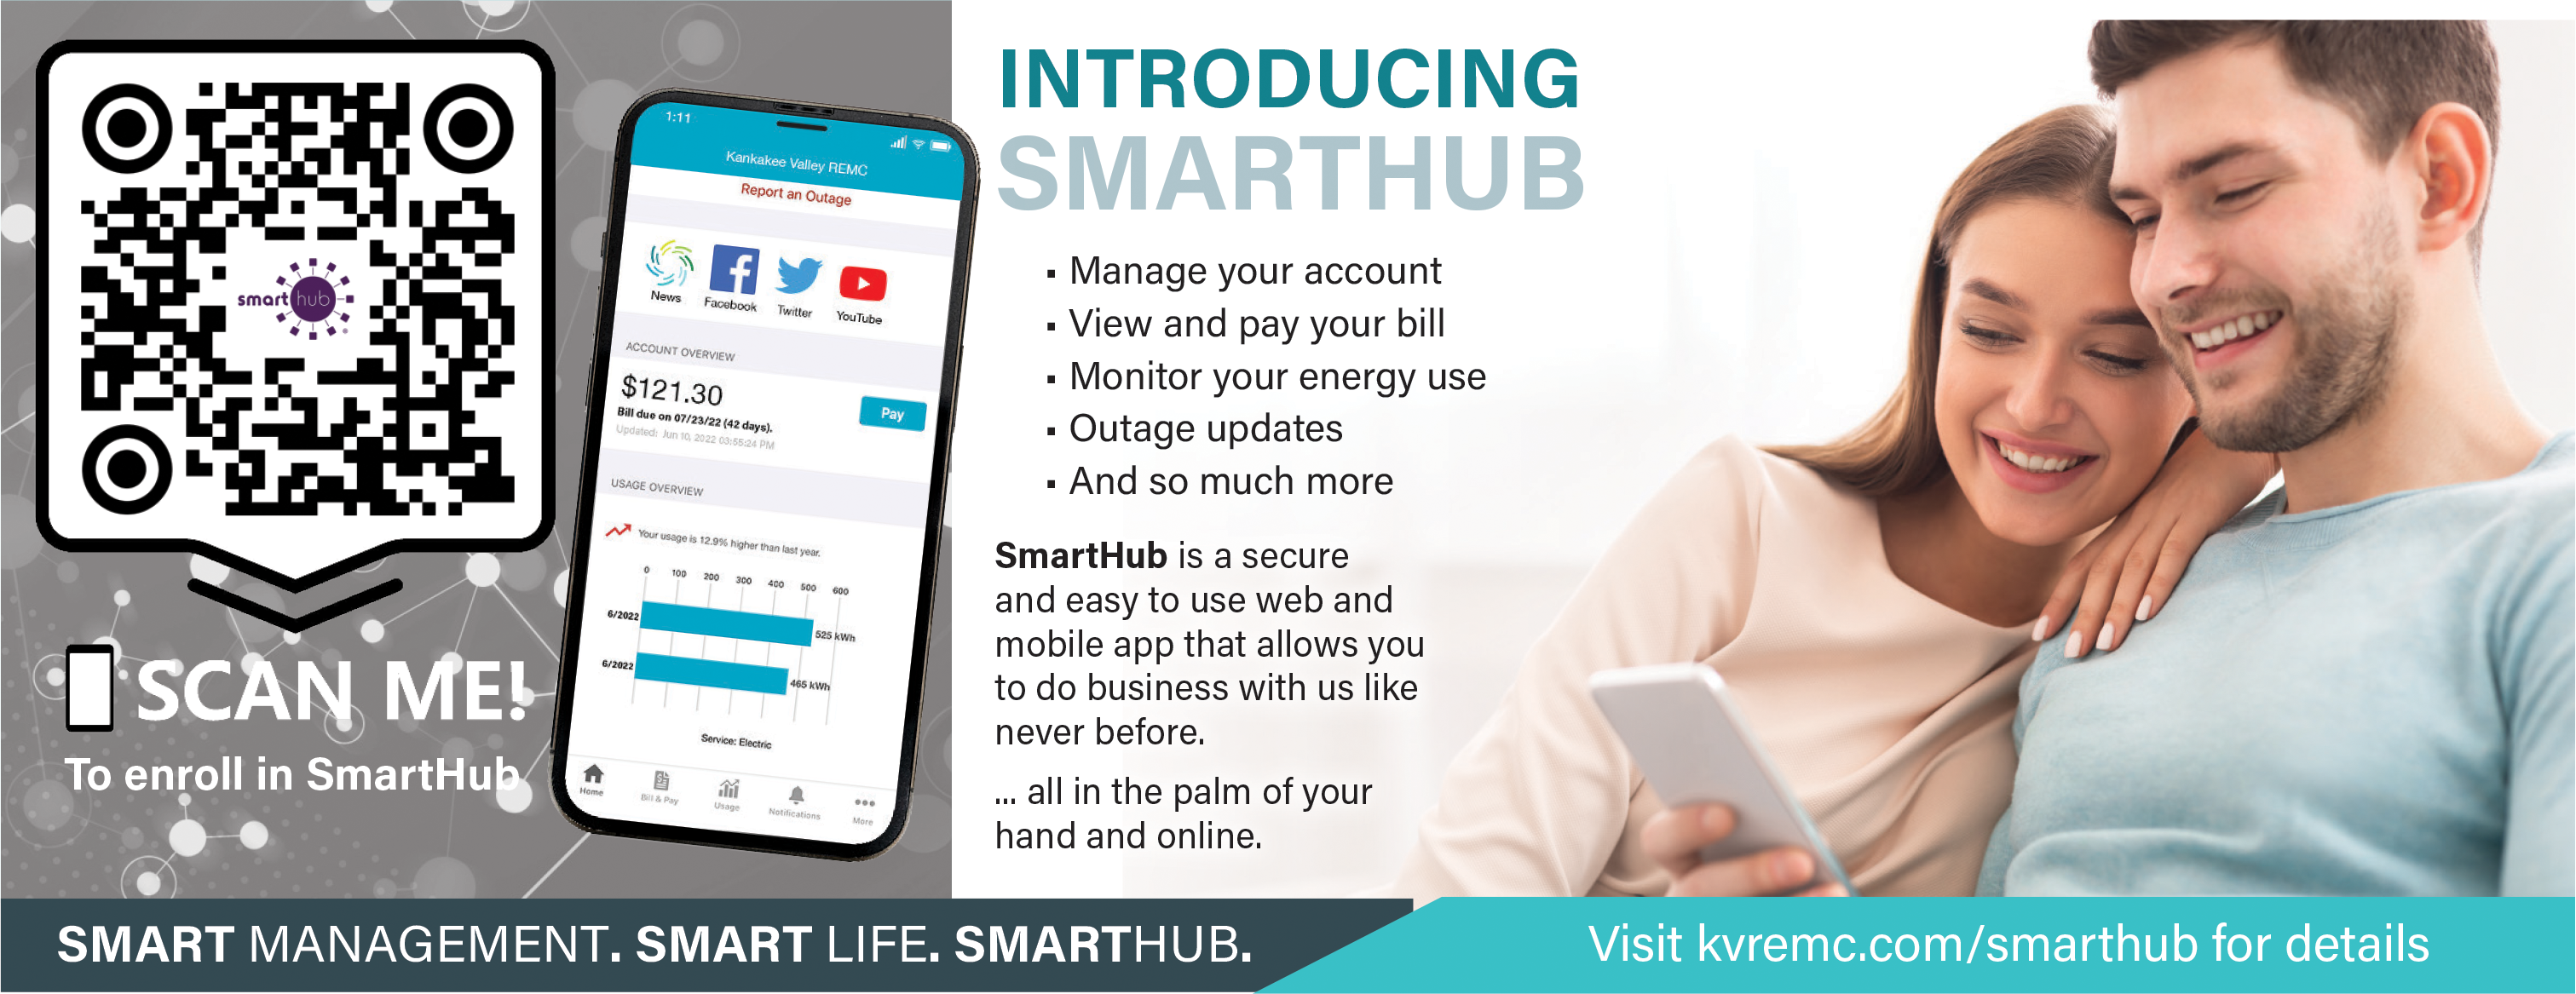 KV SmartHub ad